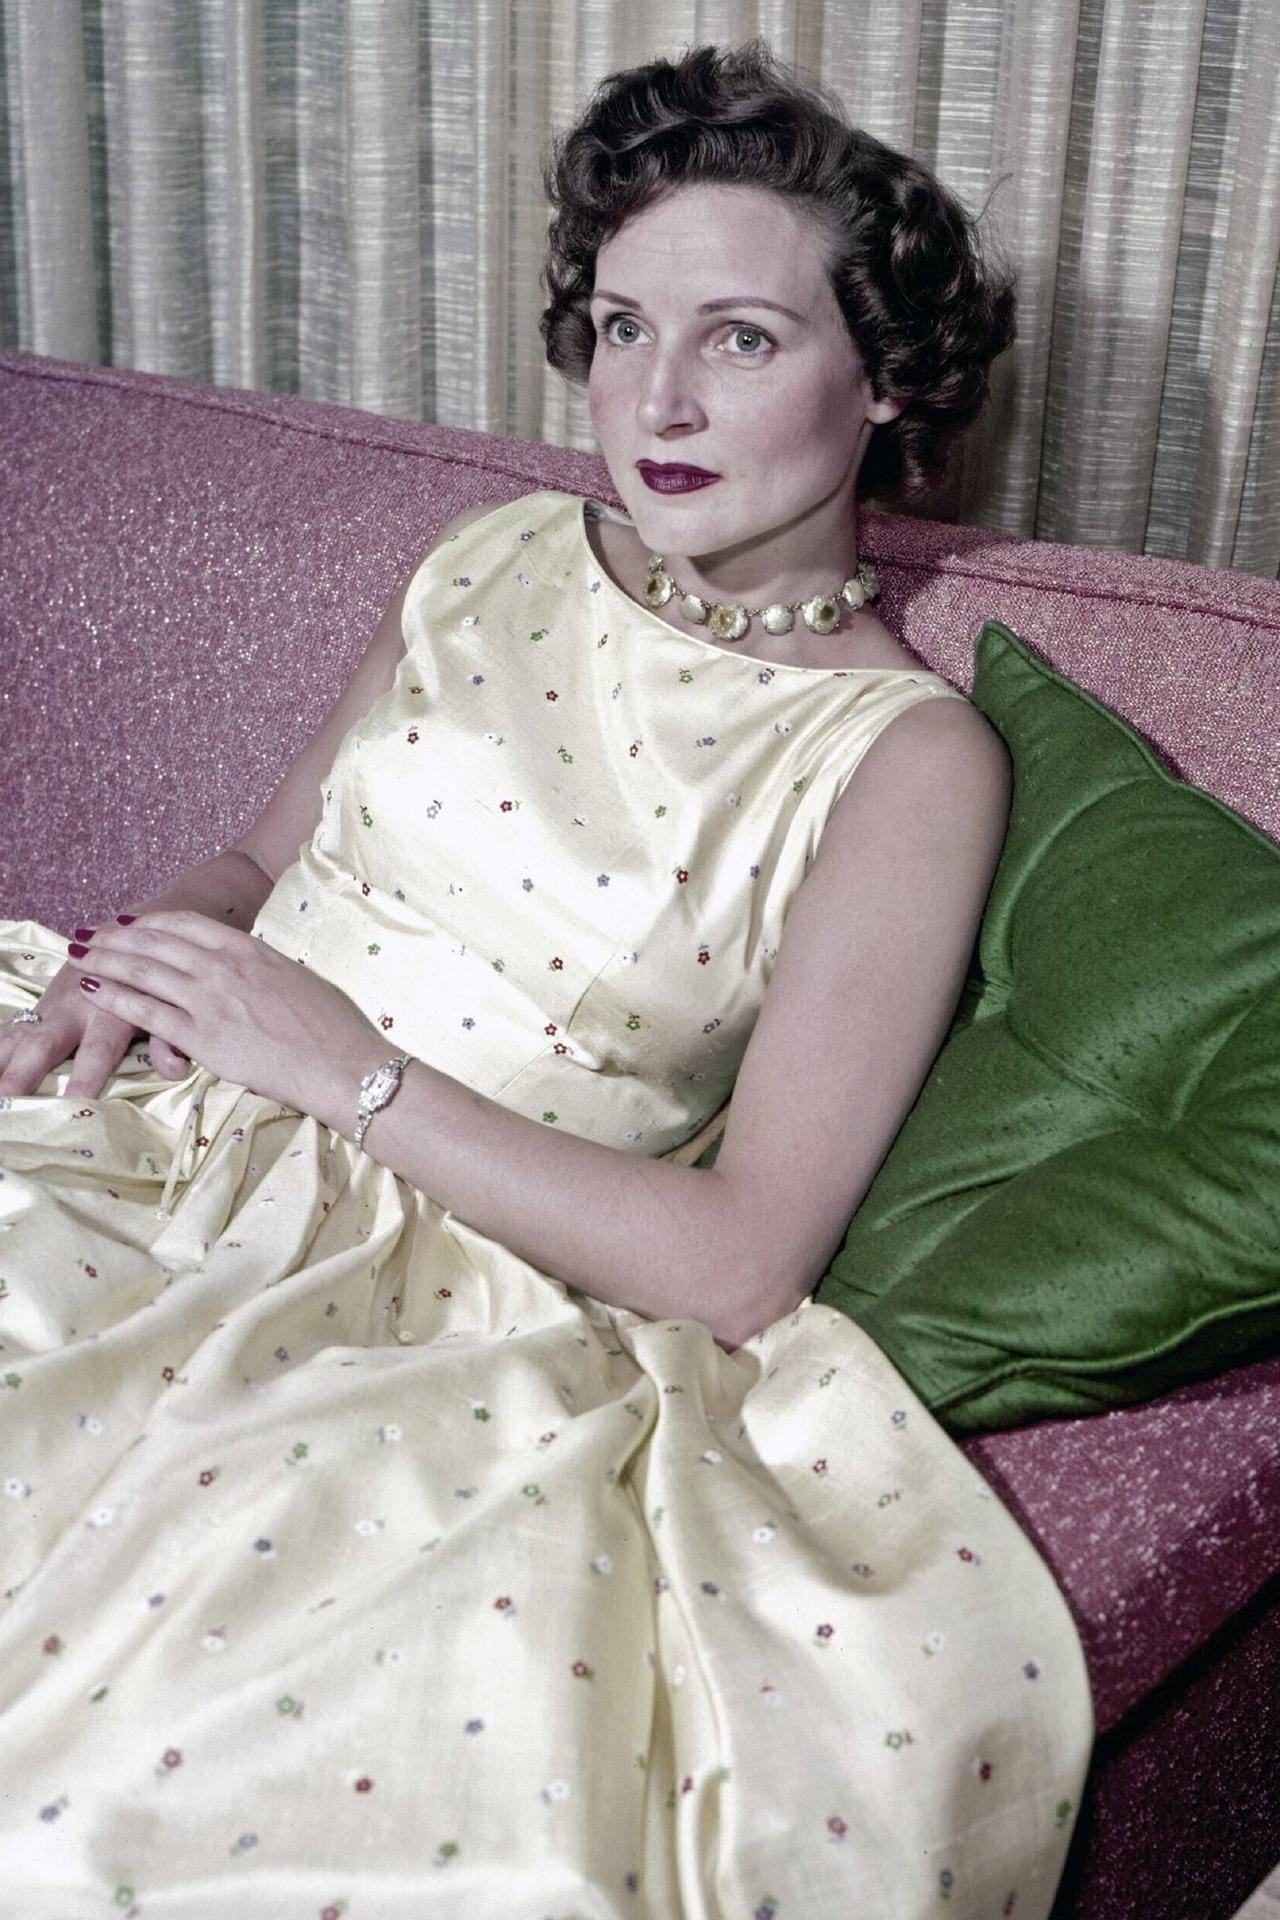 1949 bekam sie dann ihre eigene Talkshow: "Hollywood on Television".